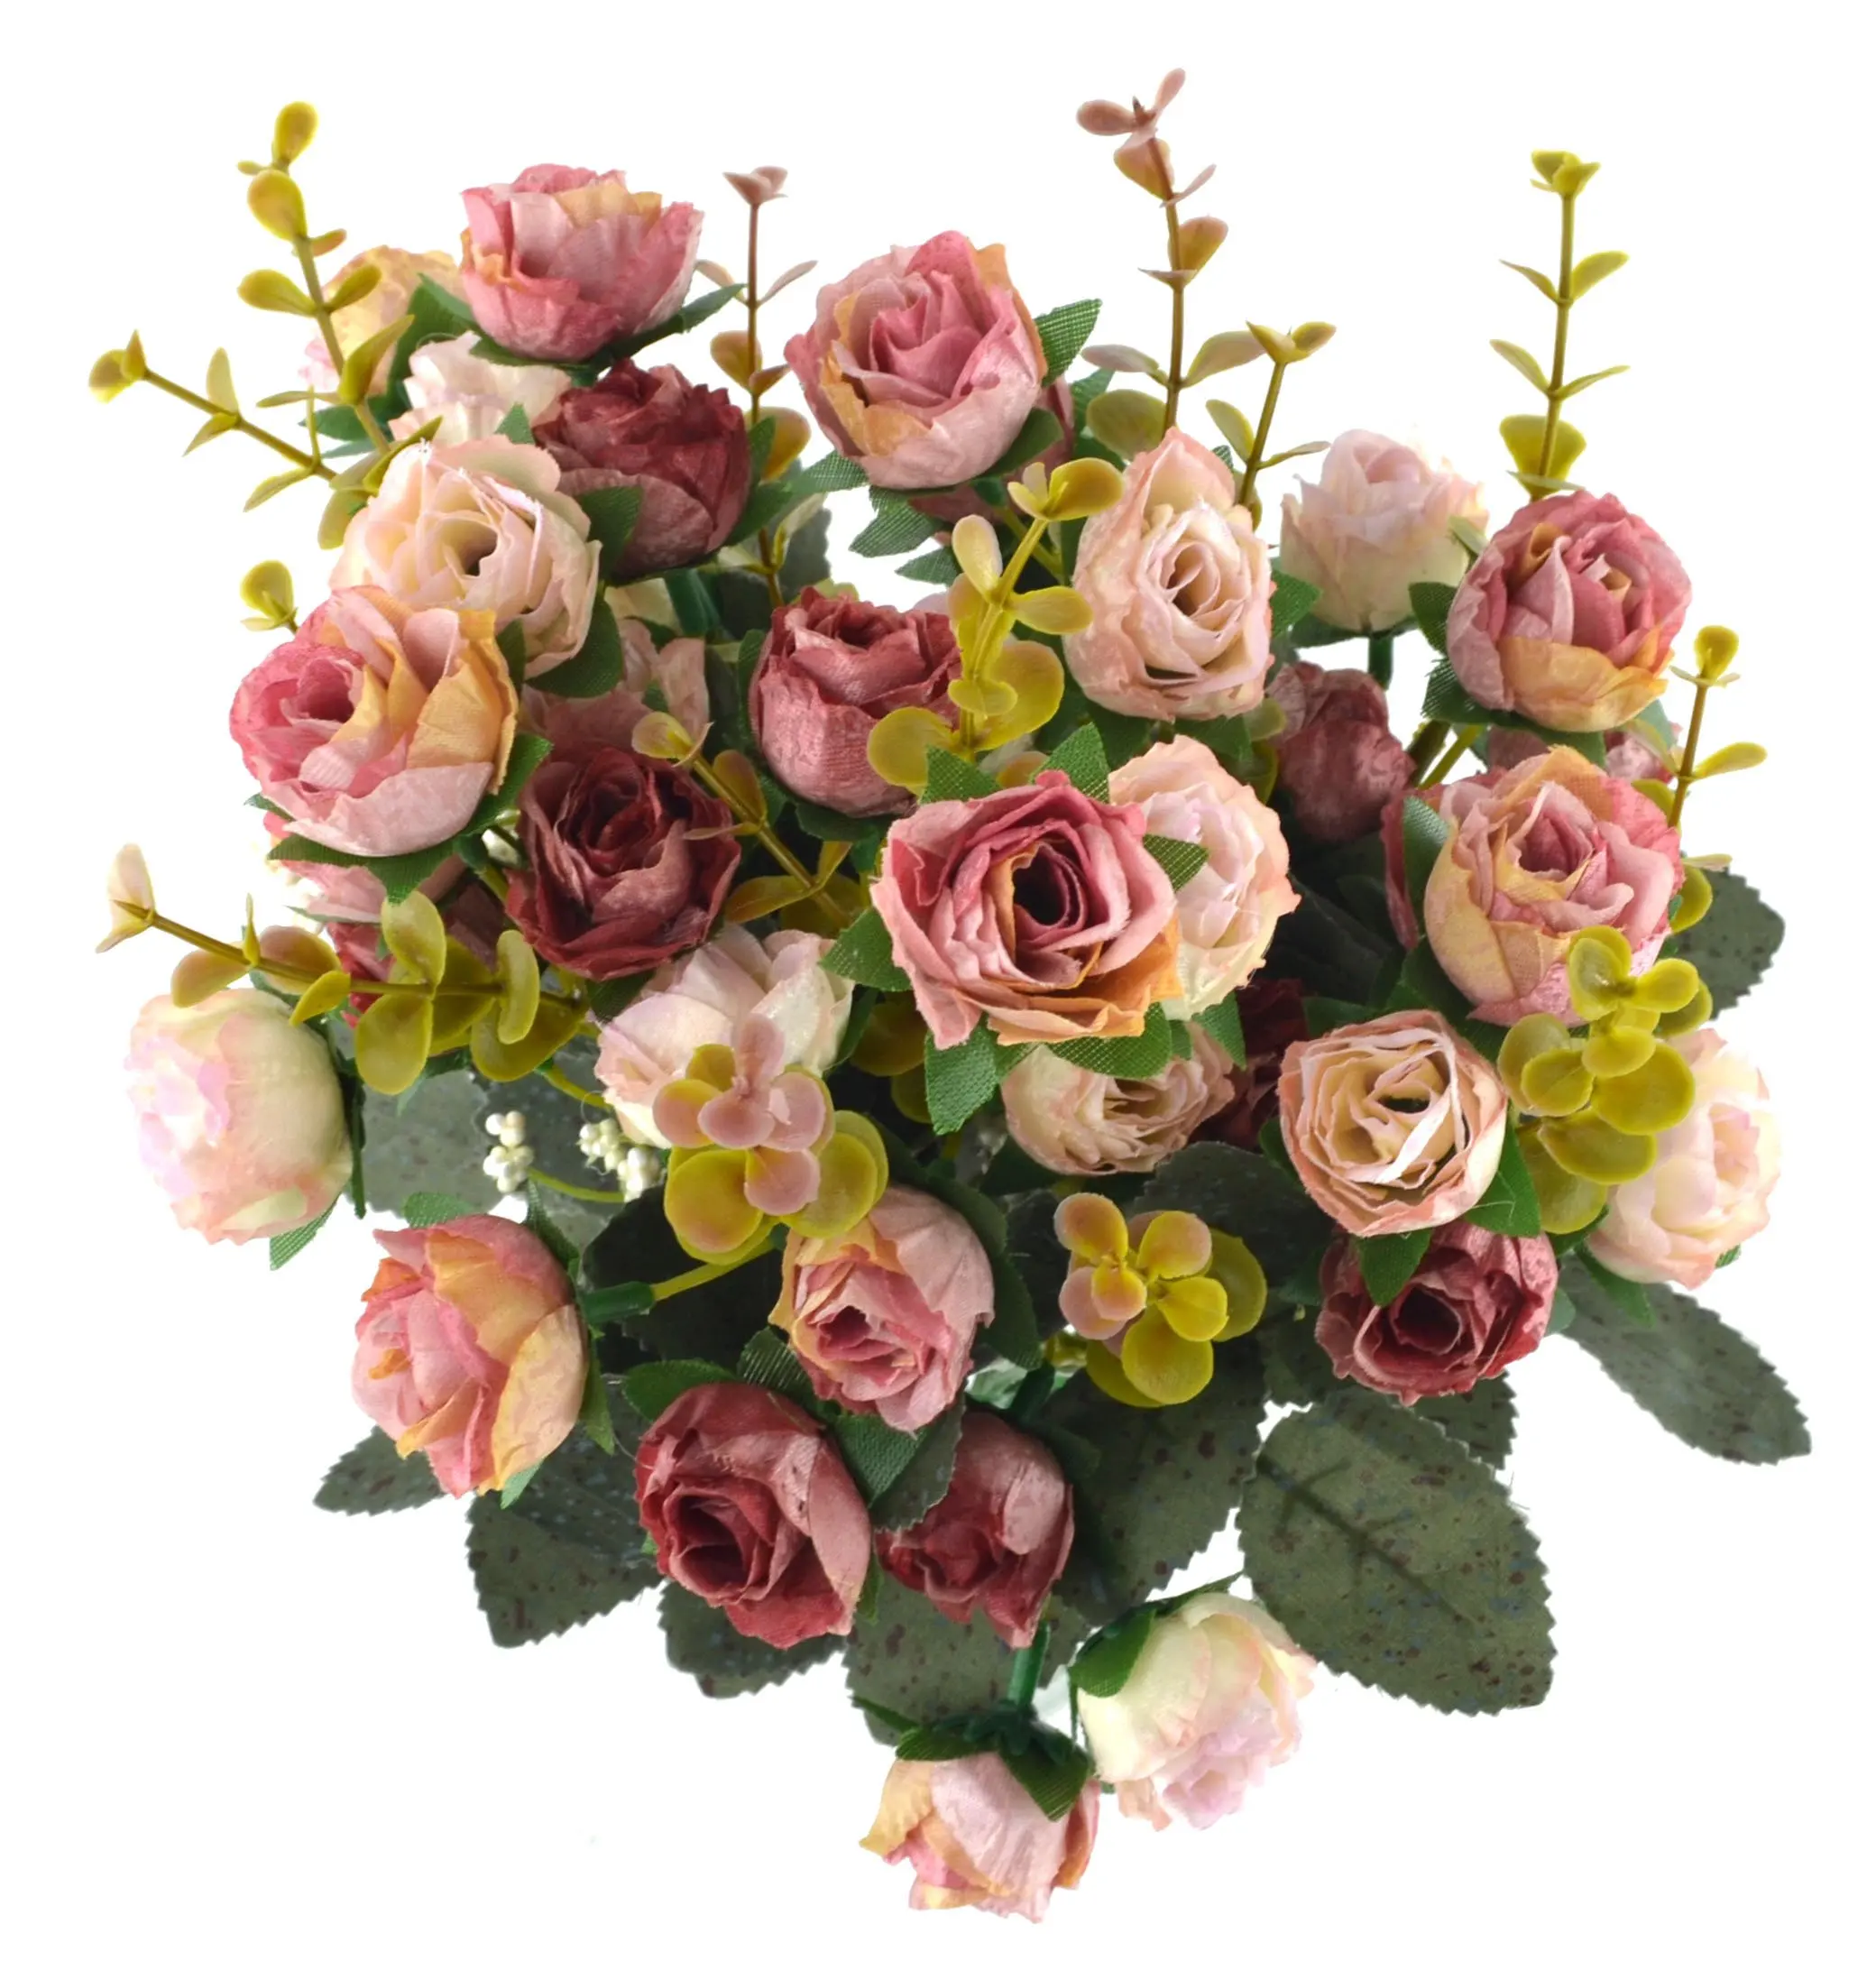 Cheap Artificial Flower Bouquet Arrangement, find ...